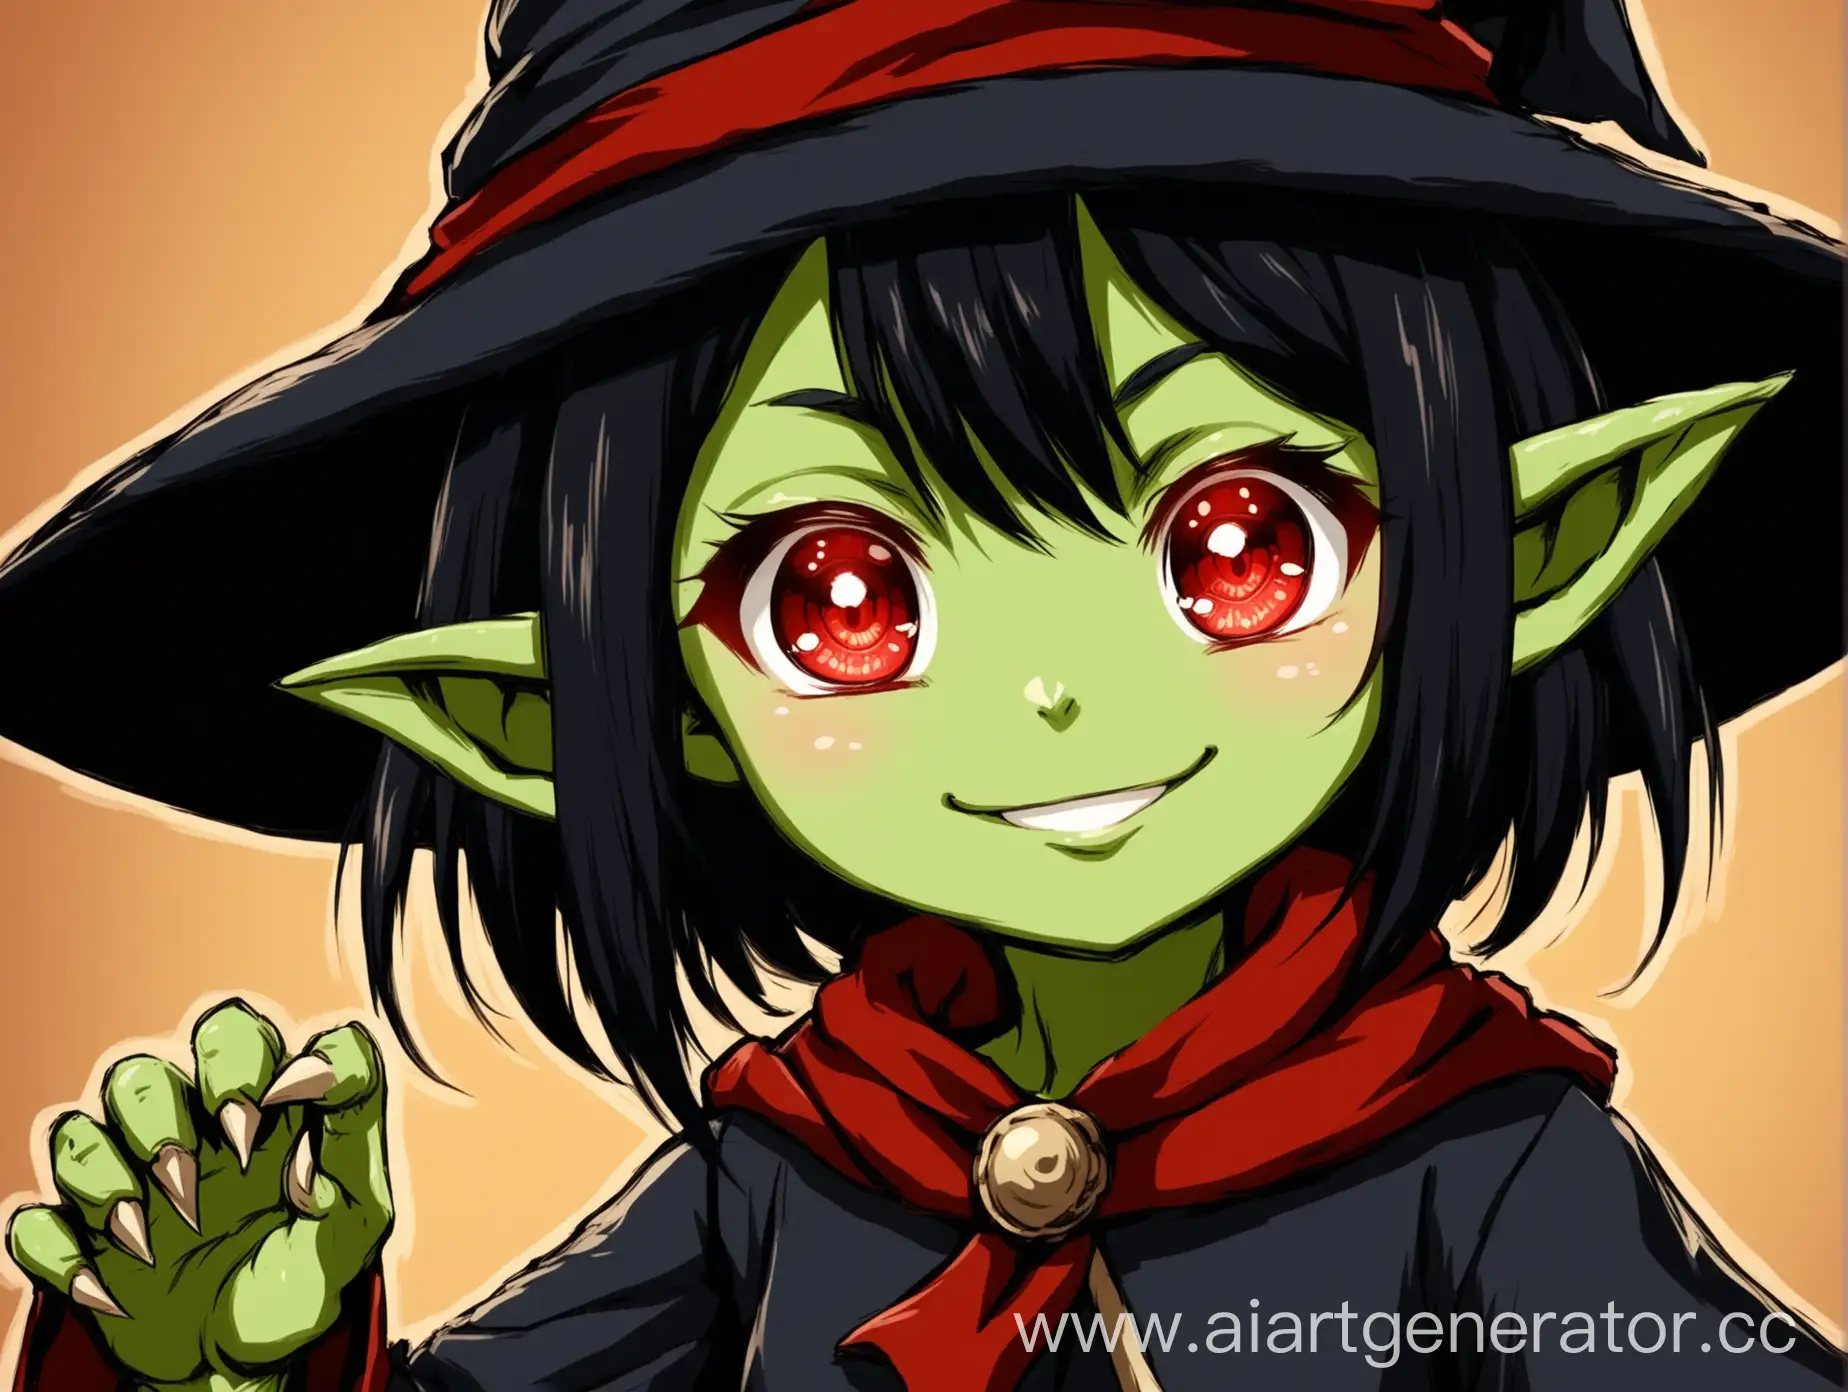 Гоблин женского пола, милое лицо с улыбкой, чёрными короткие волосы, в одеяние мага (красного и чёрного цвета) , с красными глазами, зелёная кожа, аниме стиль